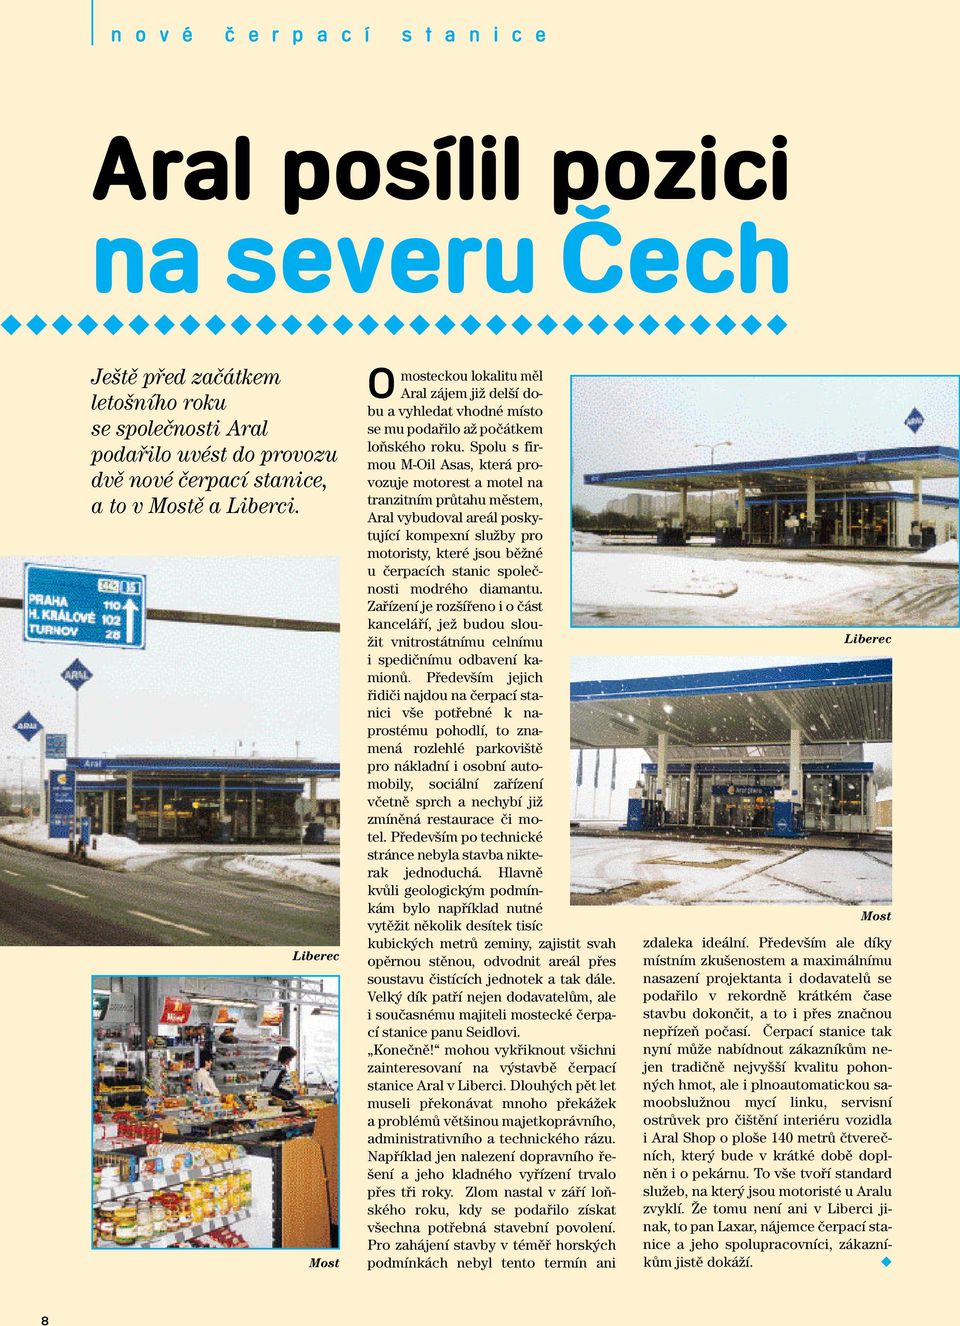 Spolu s firmou M-Oil Asas, která provozuje motorest a motel na tranzitním prûtahu mûstem, Aral vybudoval areál poskytující kompexní sluïby pro motoristy, které jsou bûïné u ãerpacích stanic